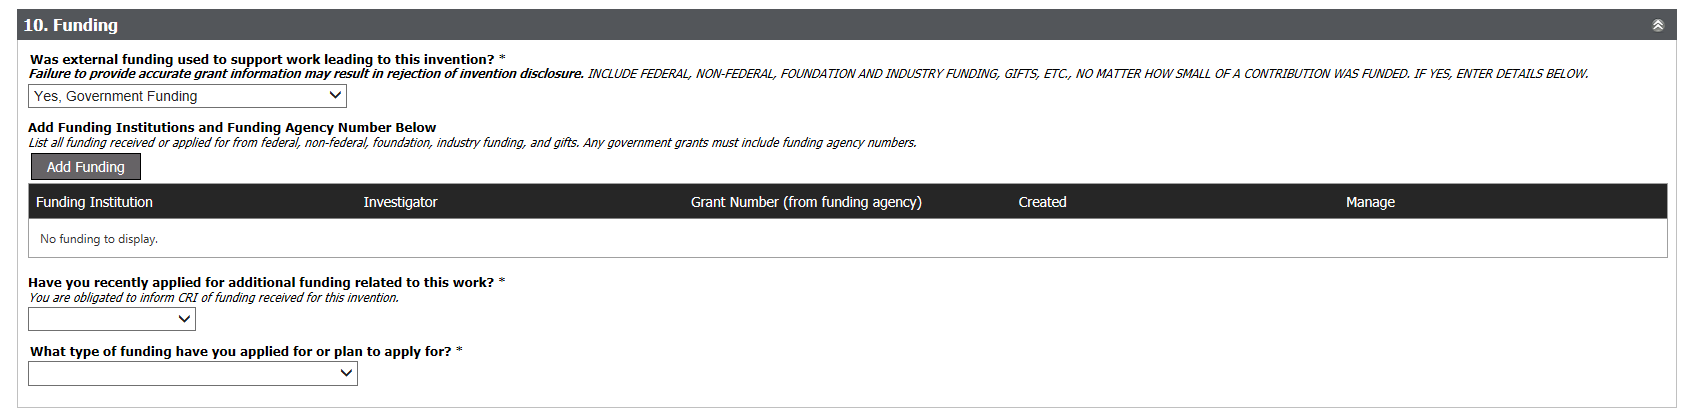 funding screen